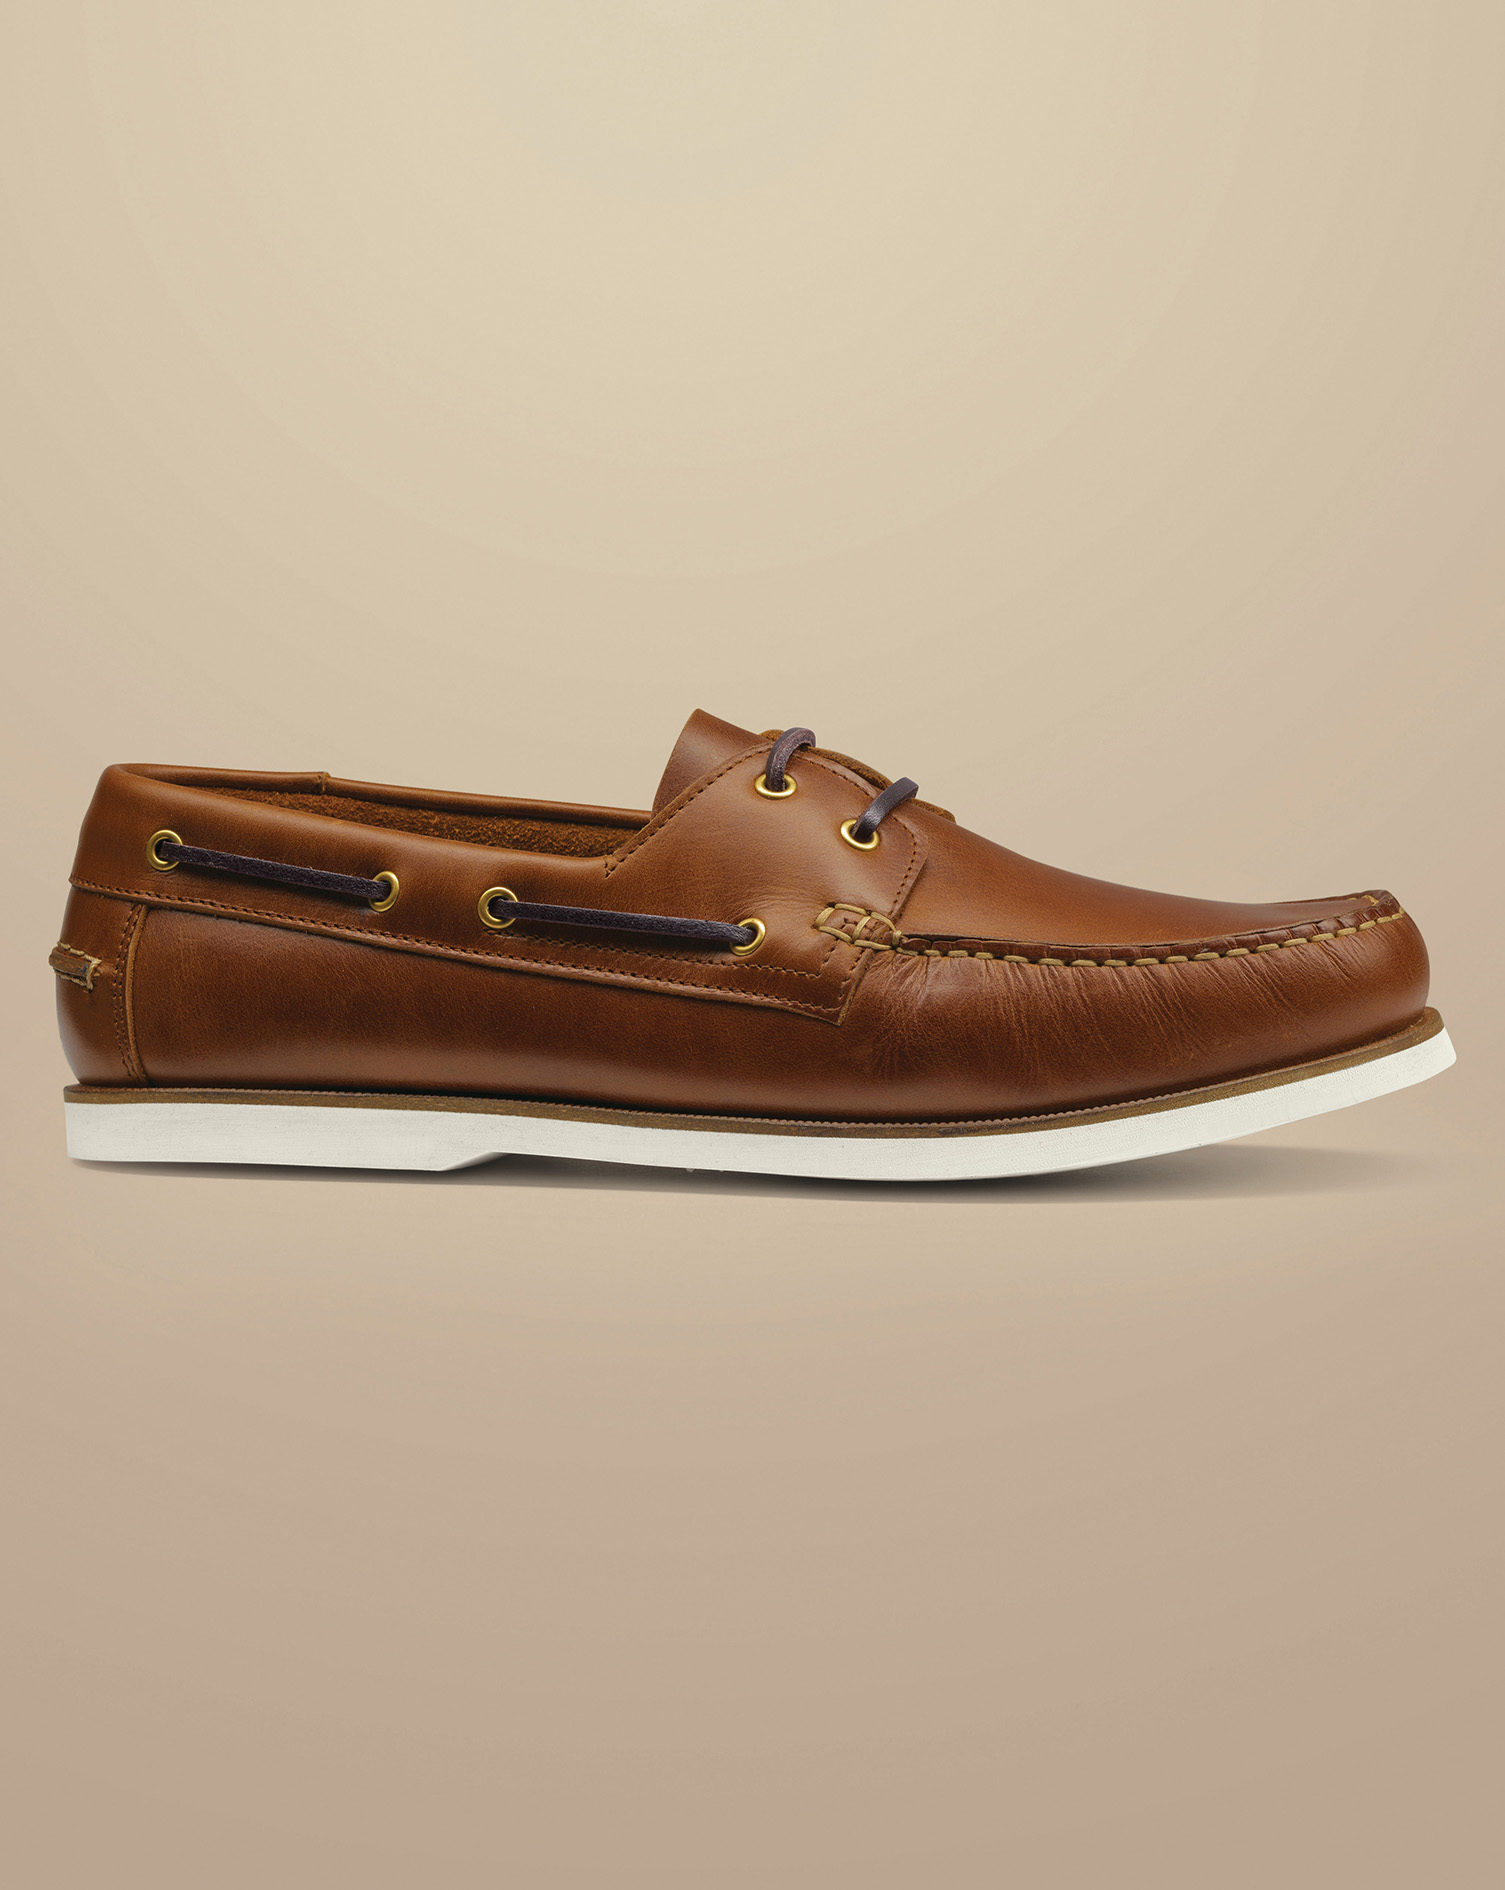 Men's Charles Tyrwhitt Leather Boat Shoe - Dark Tan Neutral Size 8
